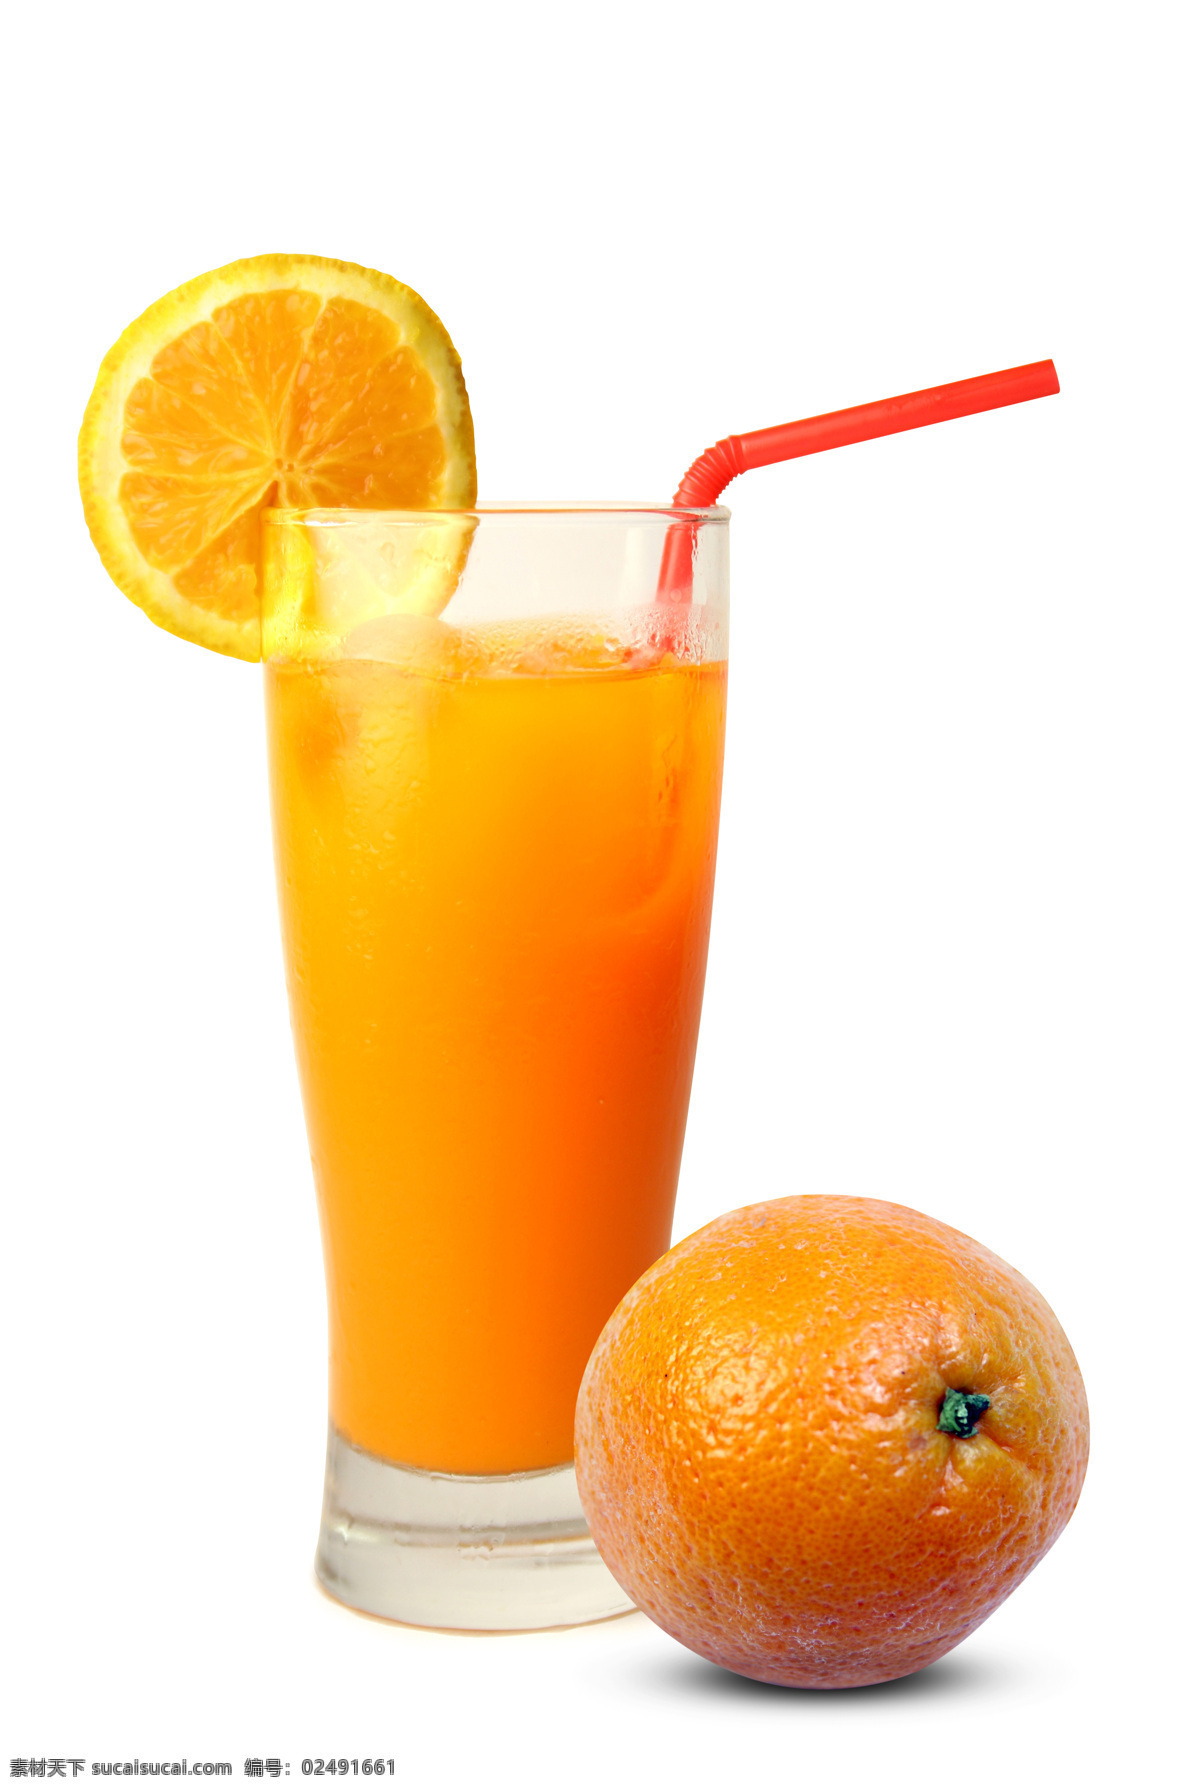 柳橙汁 柳橙 橙汁 鲜橙 维生素c 水果 纤维 果汁 吸管 玻璃杯 杯子 冰块 冷饮 饮料酒水 餐饮美食